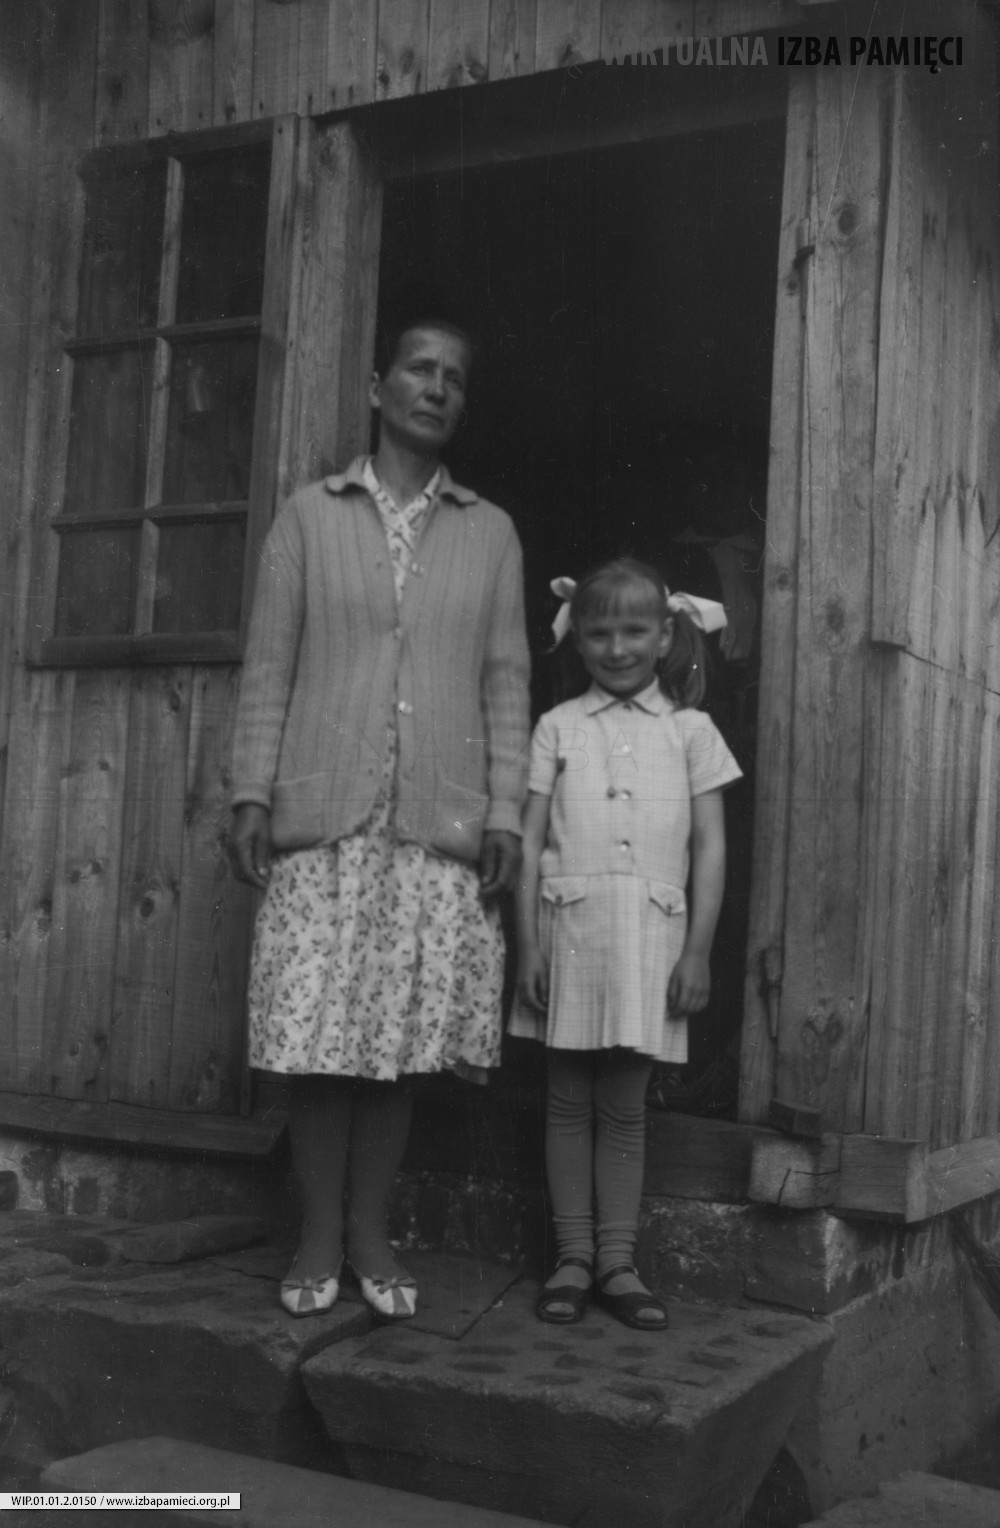 1972. Mama i córka